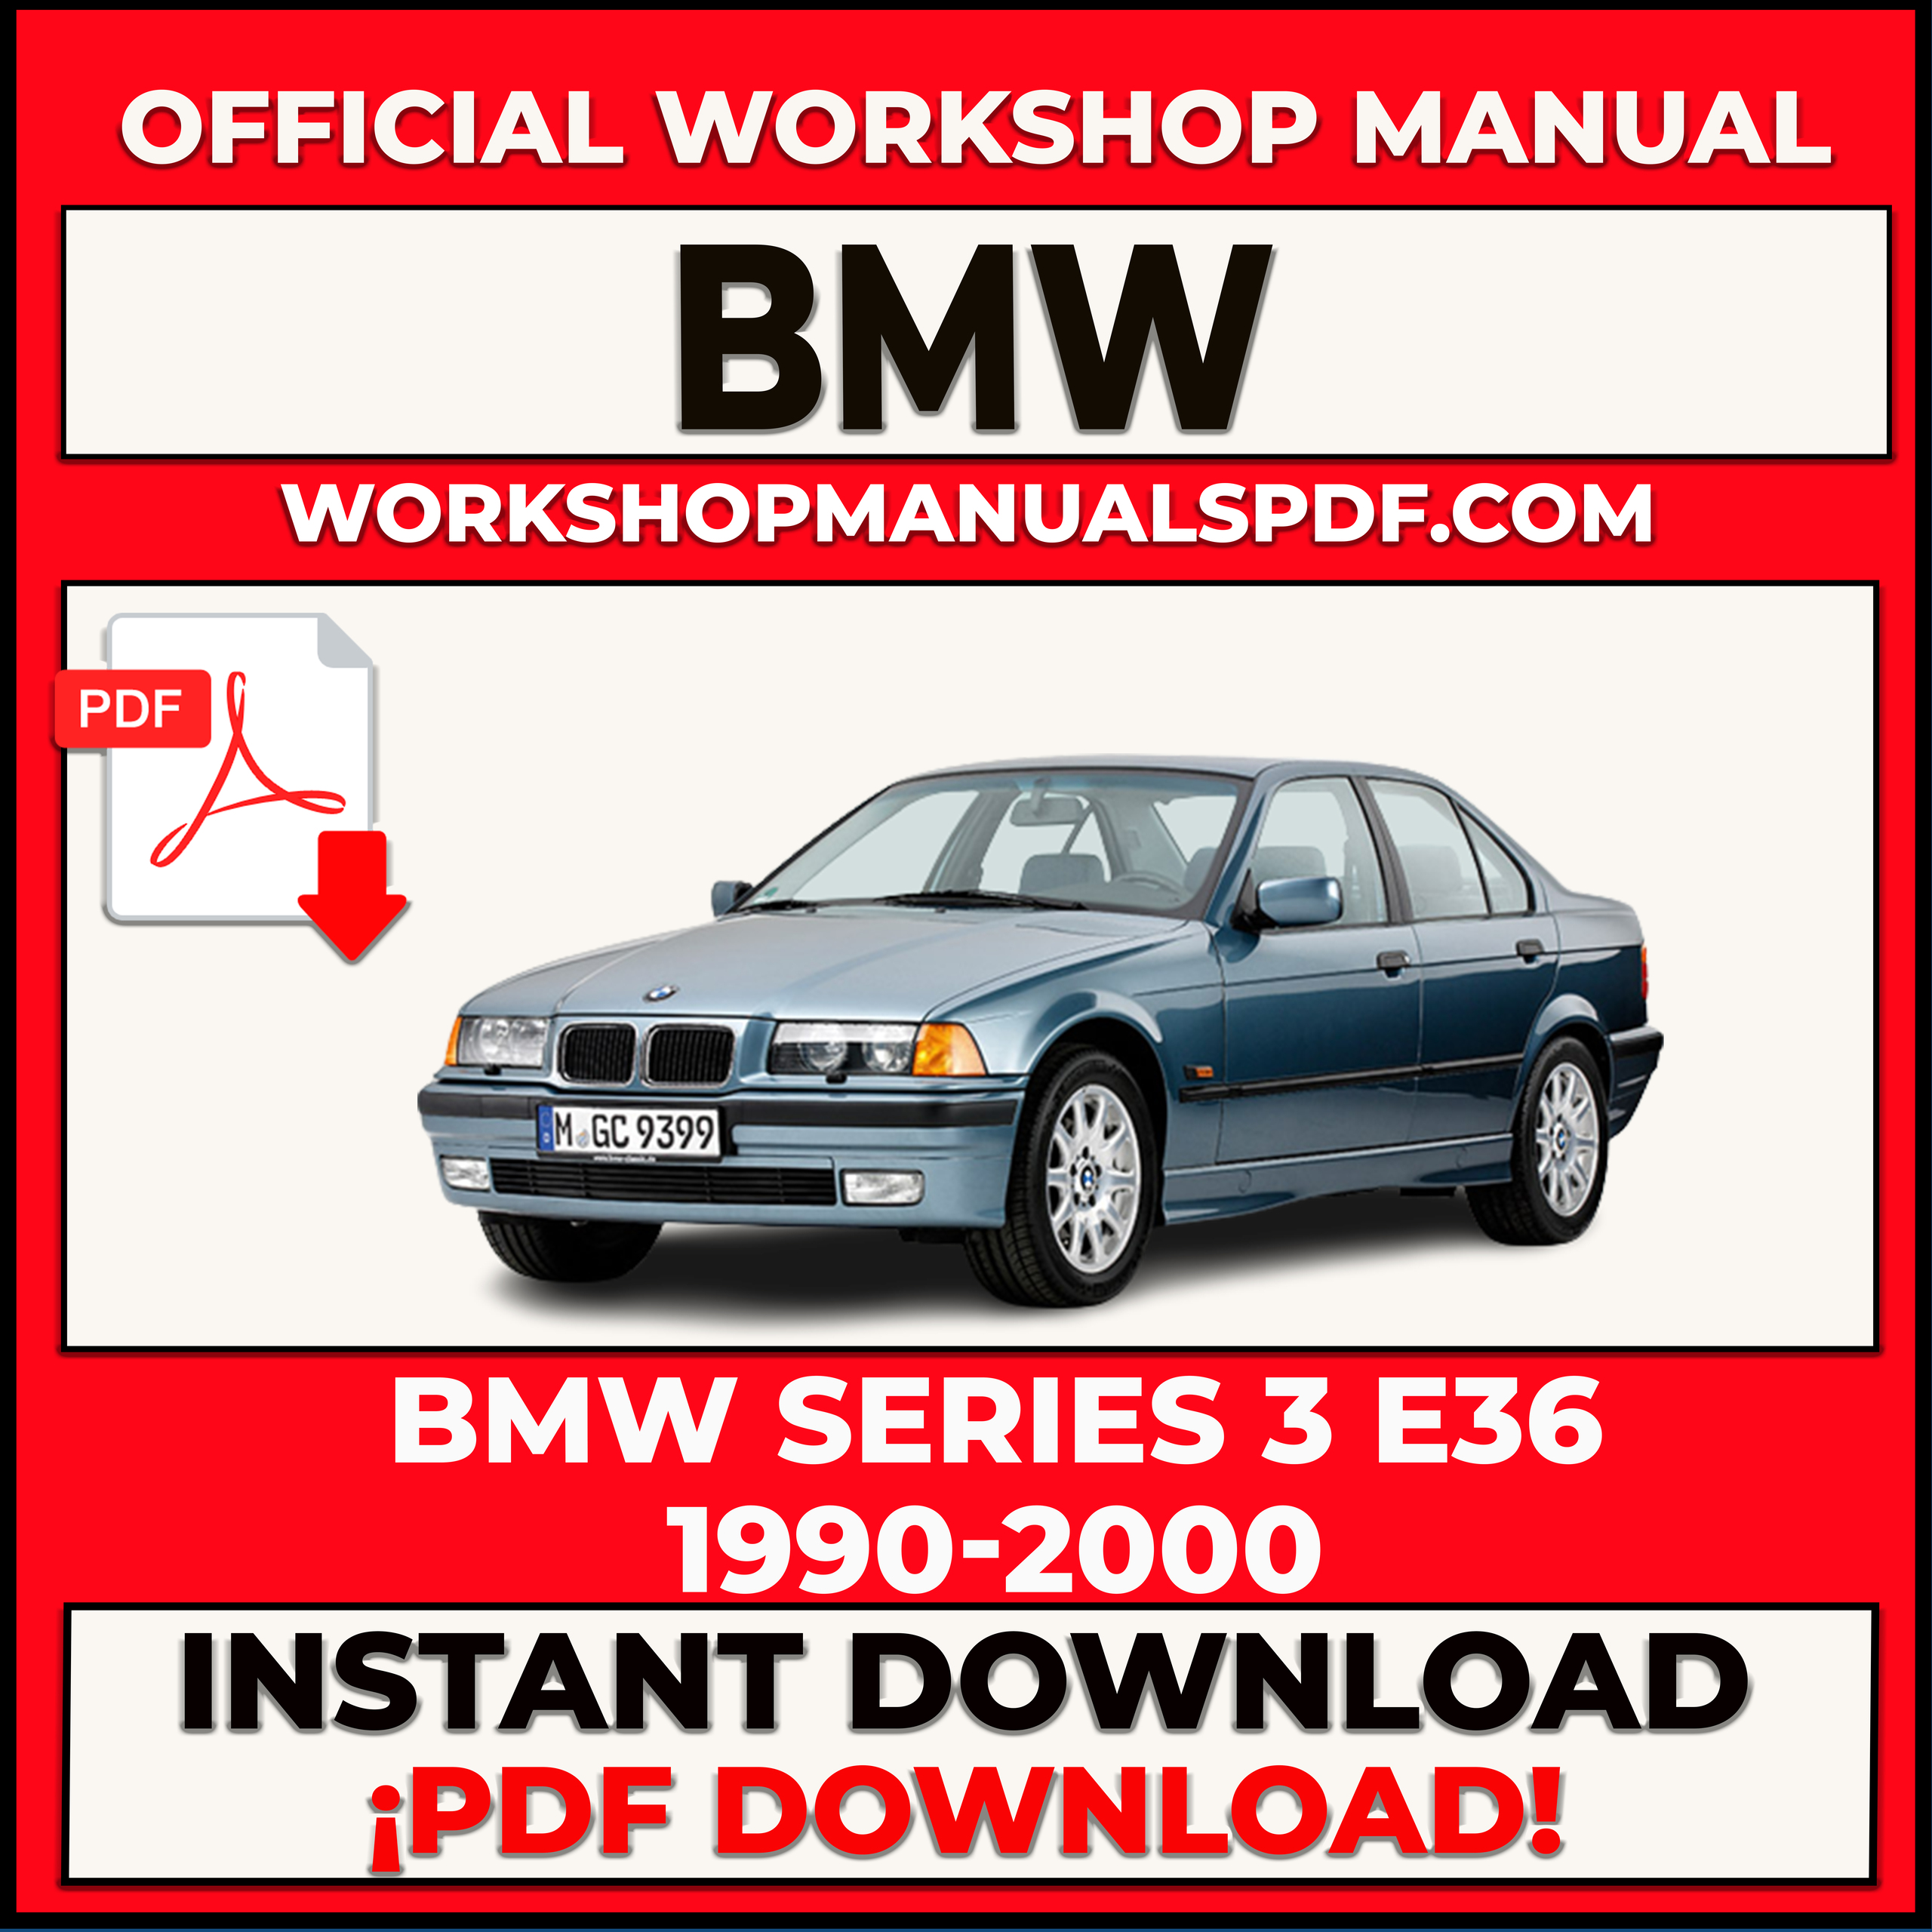 BMW SERIES 3 E36 1990-2000 WORKSHOP REPAIR MANUAL